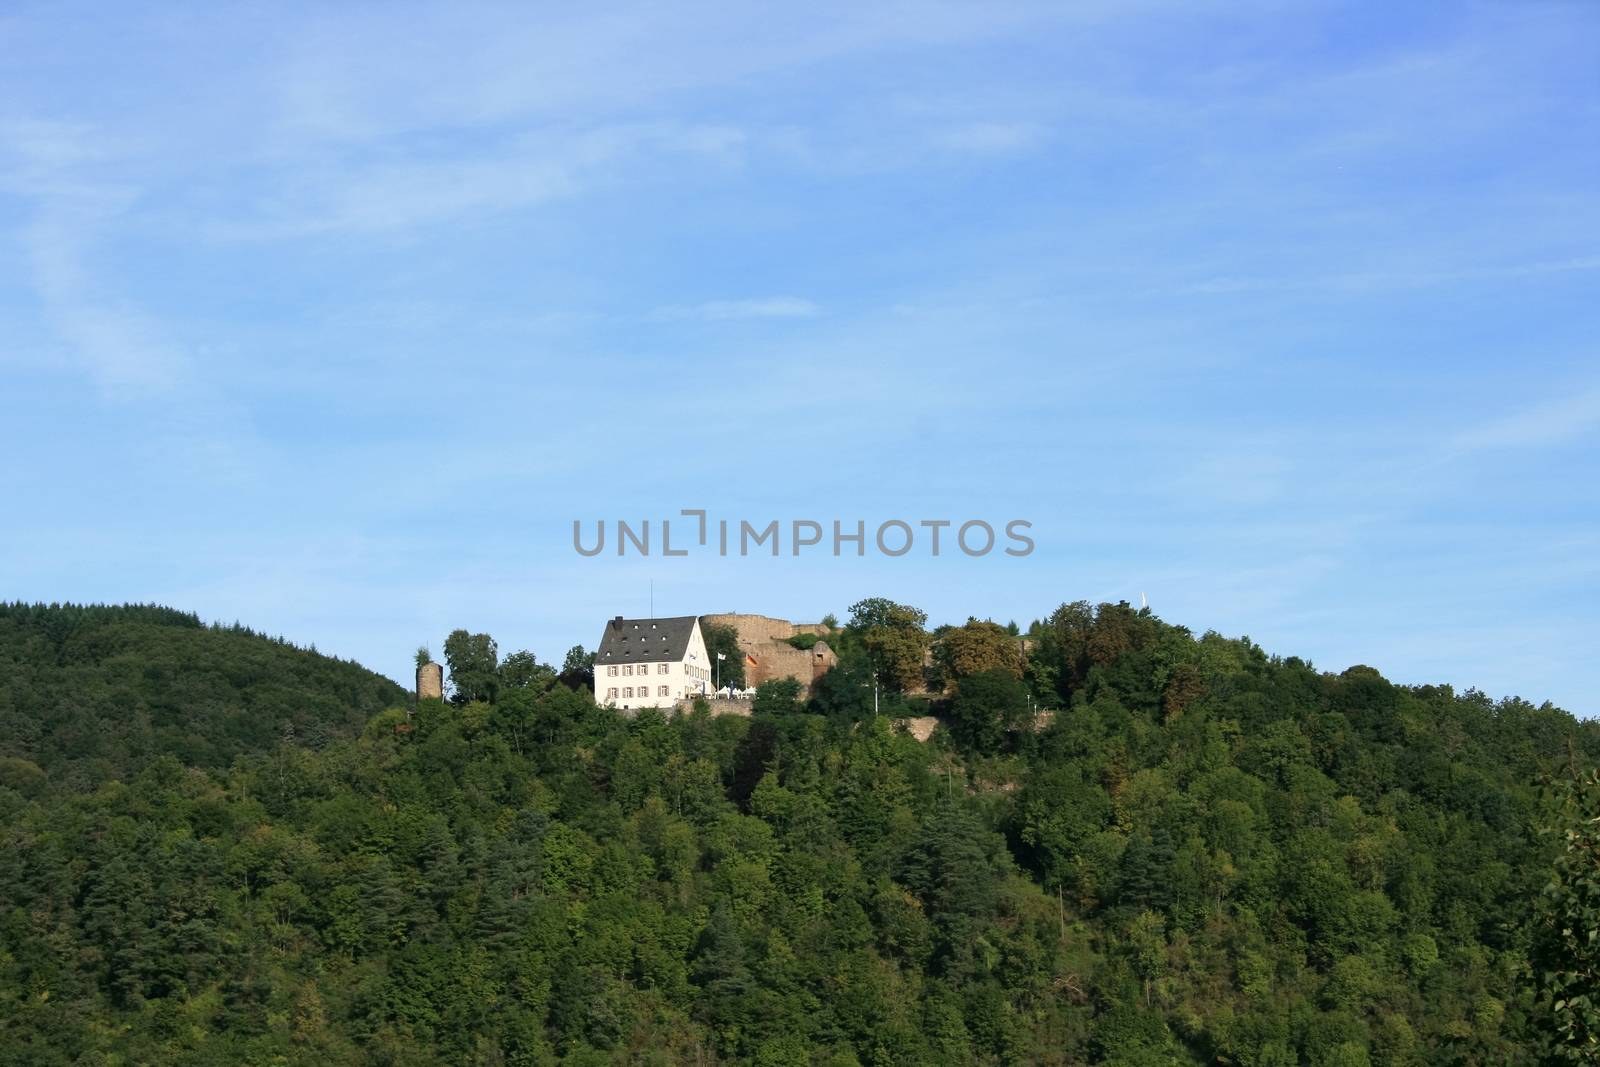 View of the castle ruins Kyrburg in Kirn, Germany  Ansicht der Burgruine Kyrburg bei Kirn,Deutschland